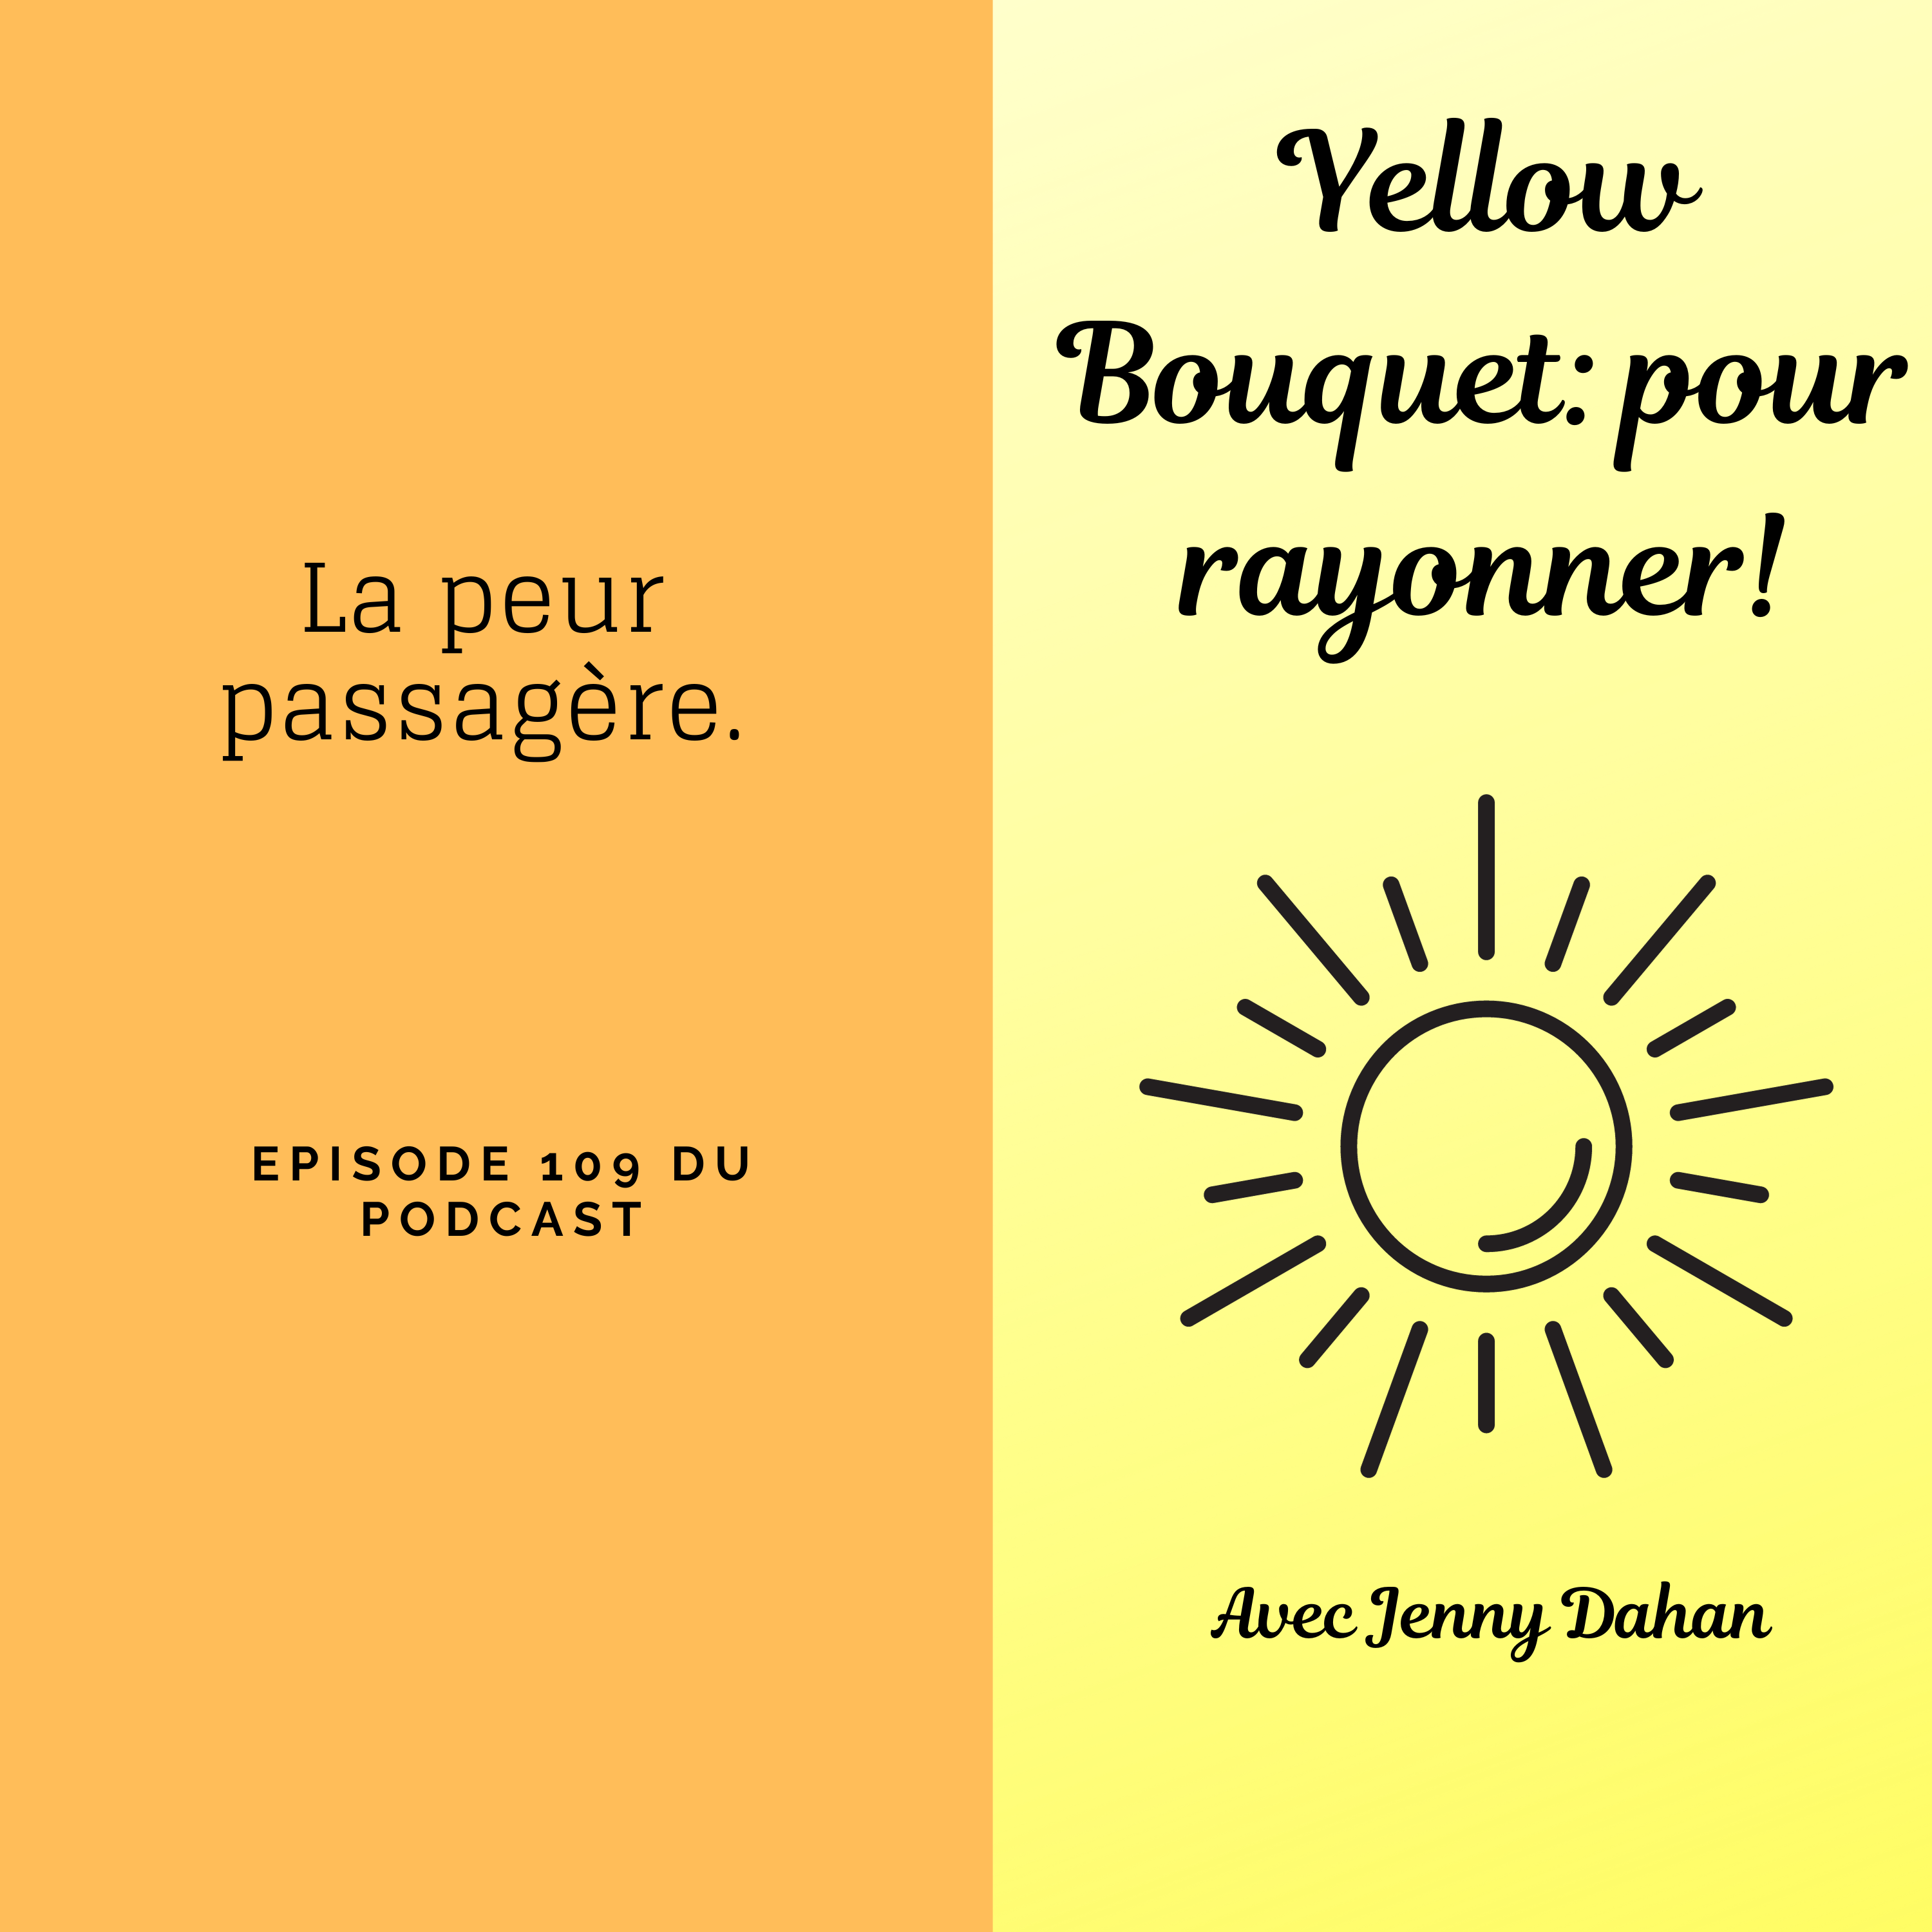 Yellow Bouquet: pour rayonner! épisode 109